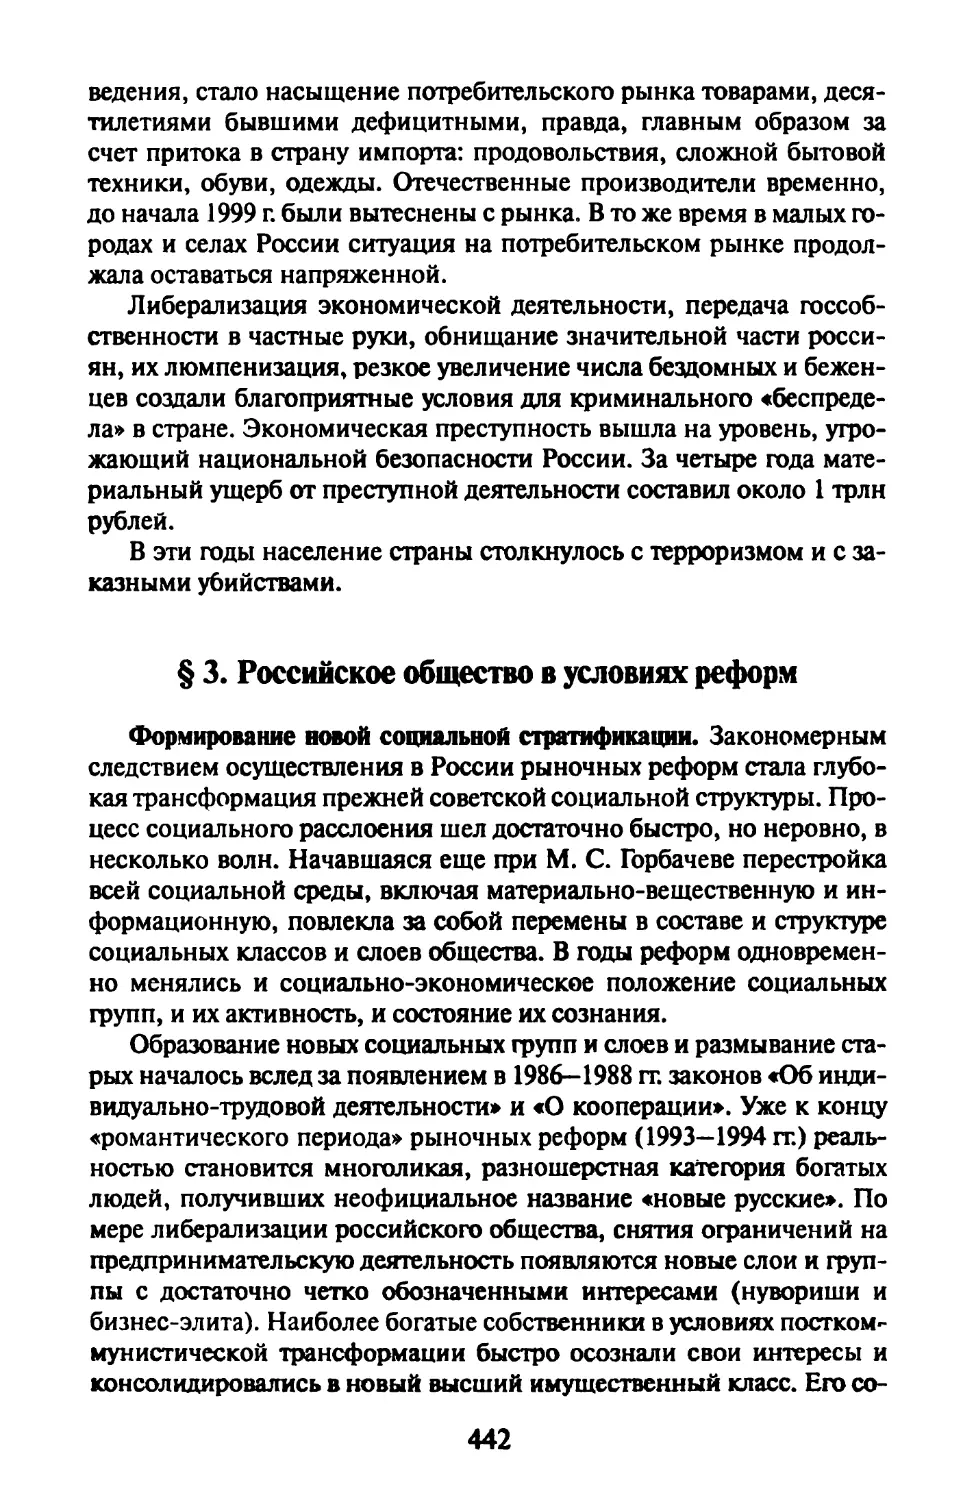 § 3. Российское общество в условиях реформ